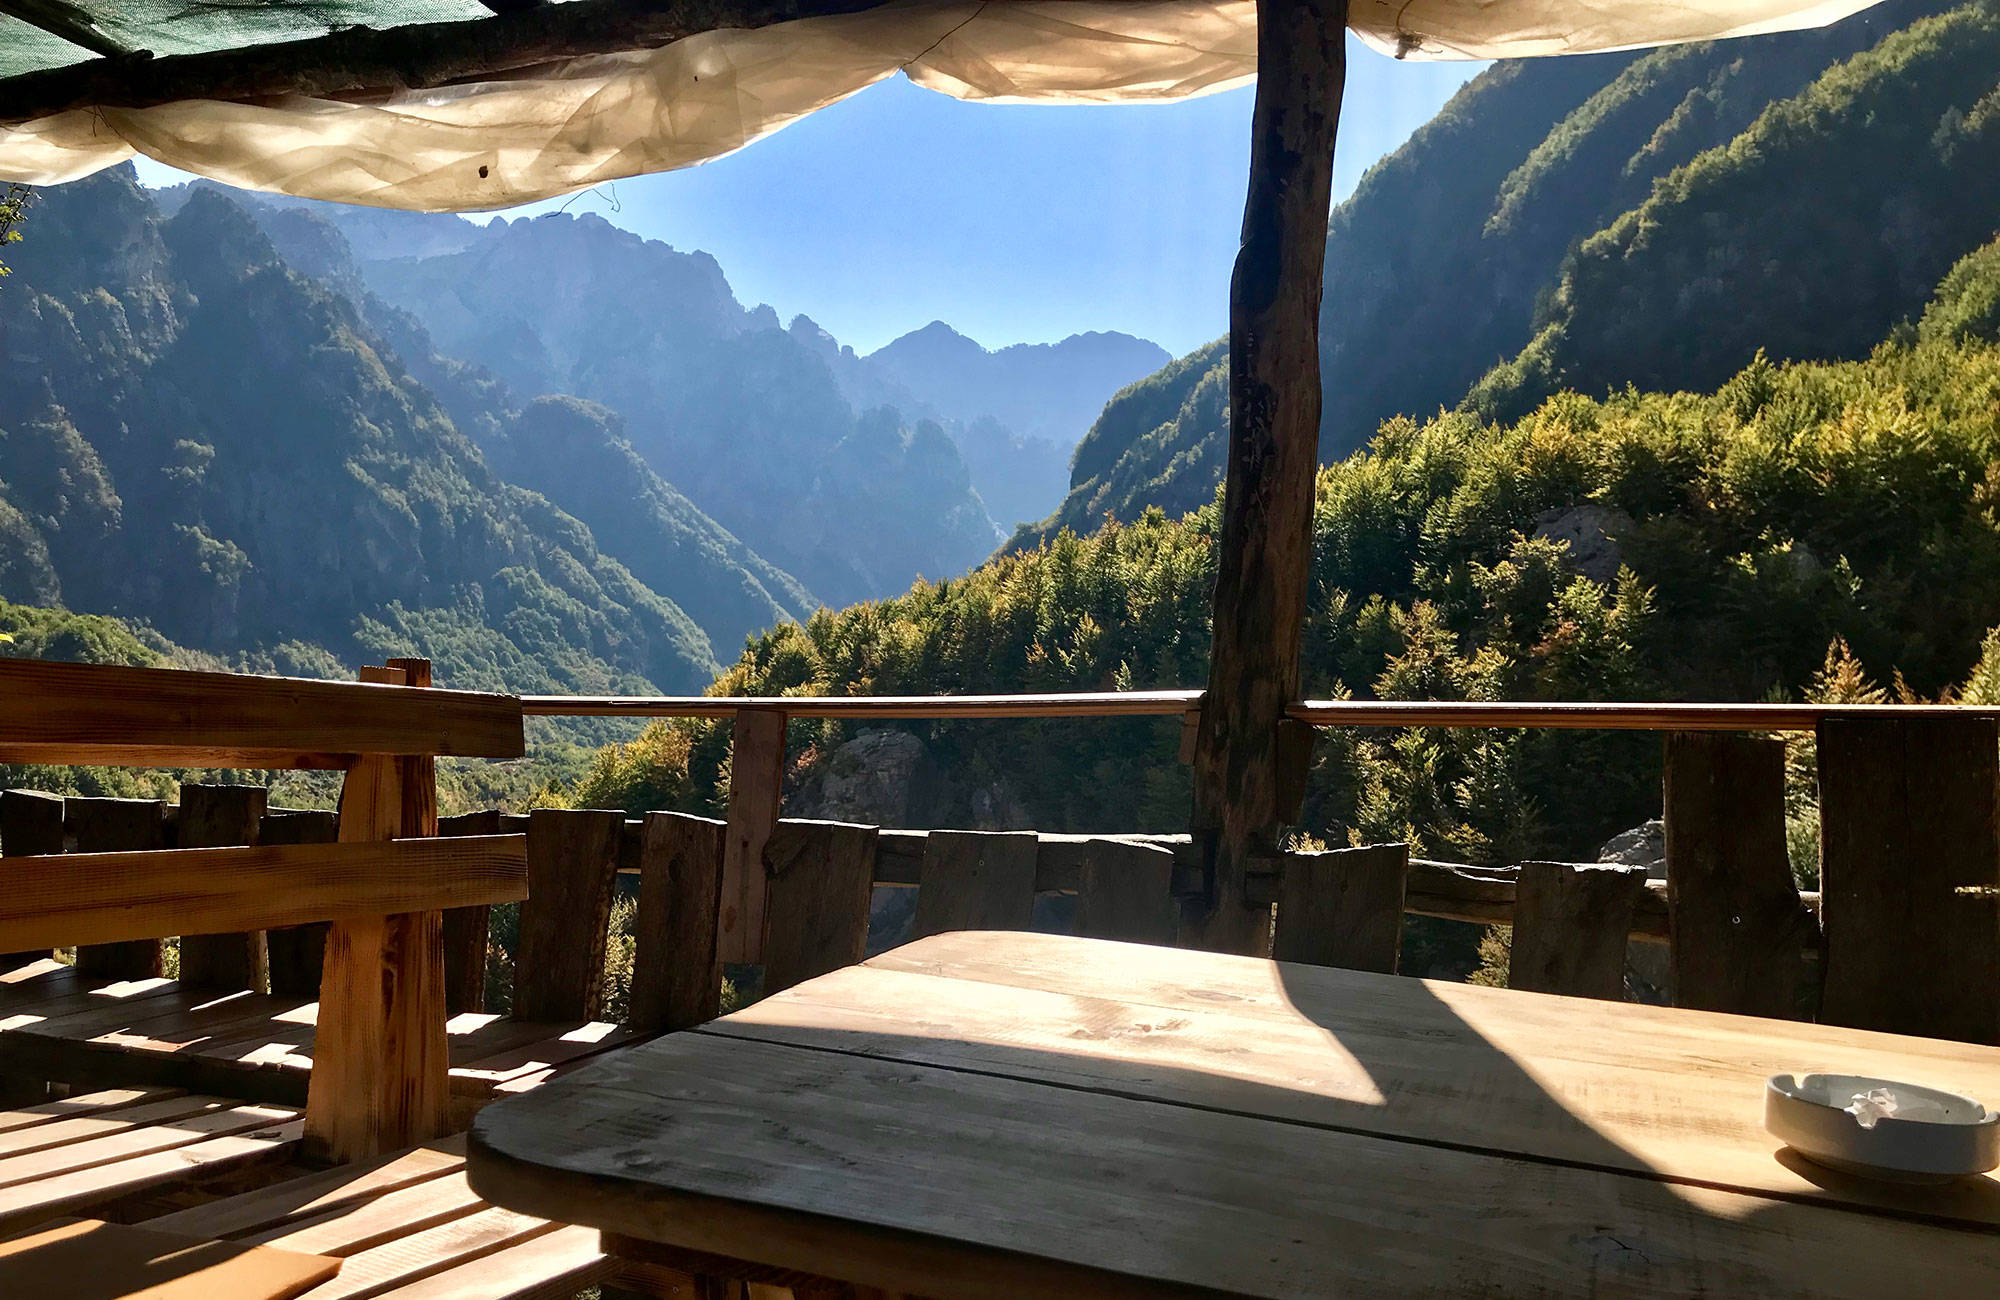 under en resa till albanien måste ni stanna för en picknick i bergen